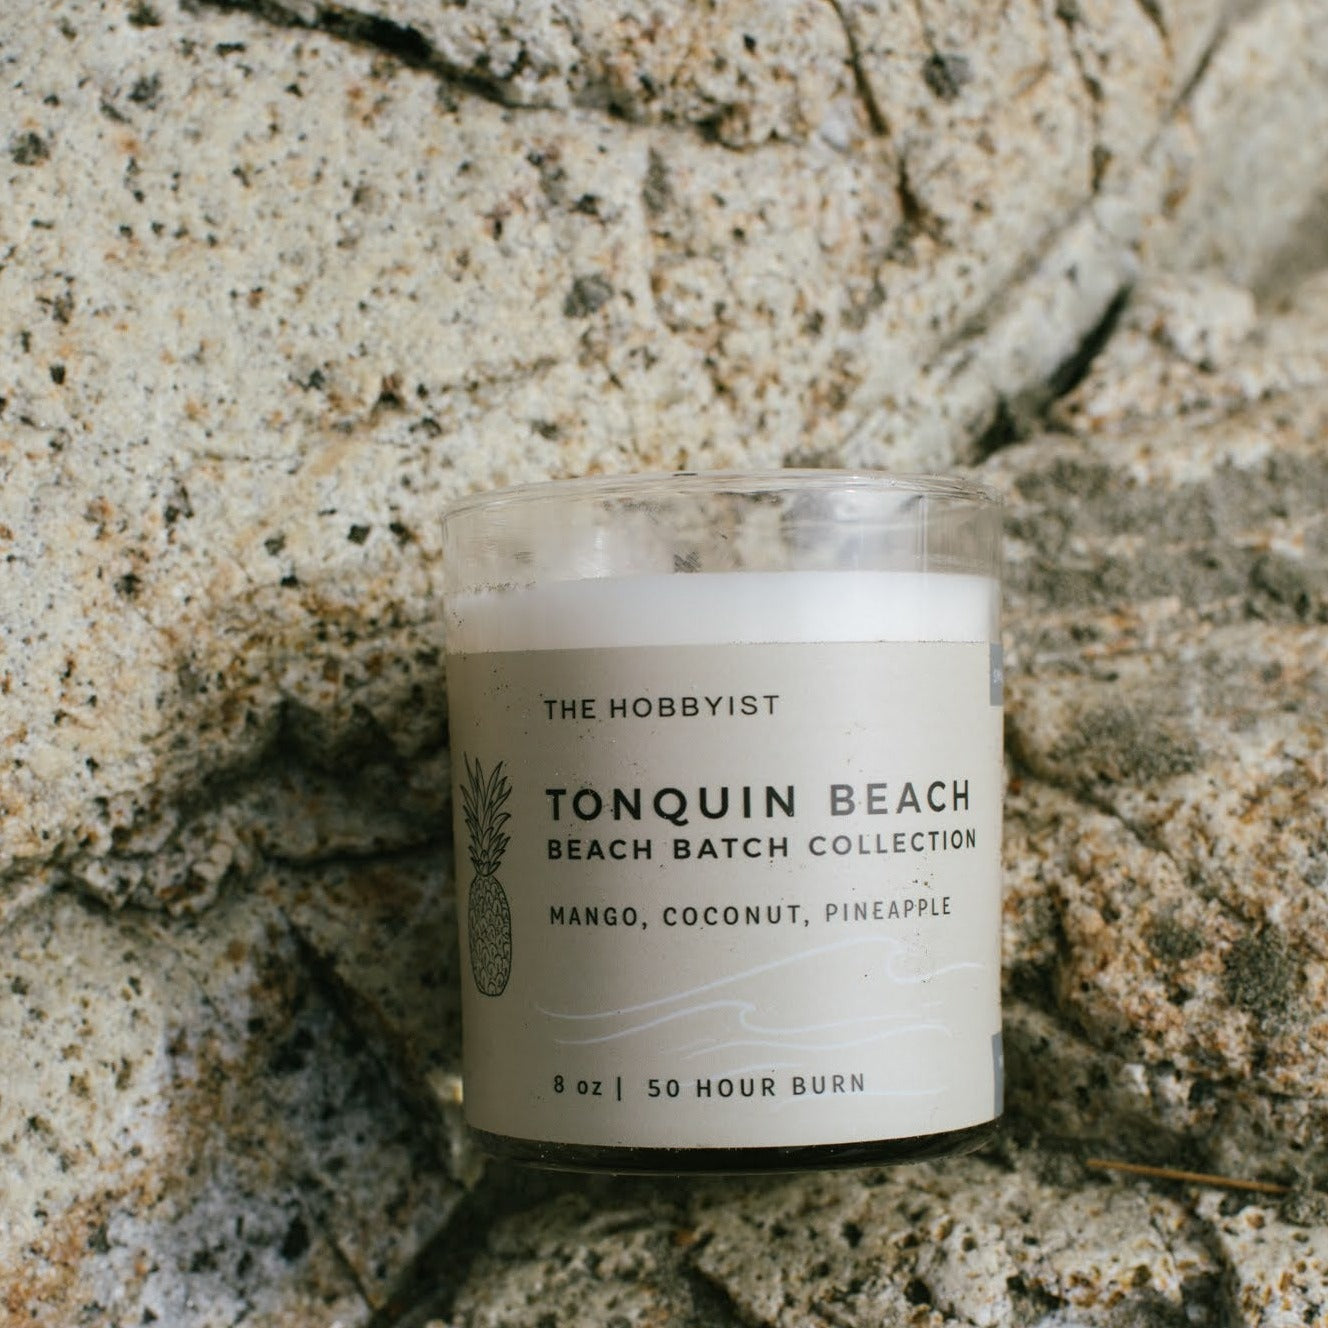 Tonquin Beach | Beach Batch Candle